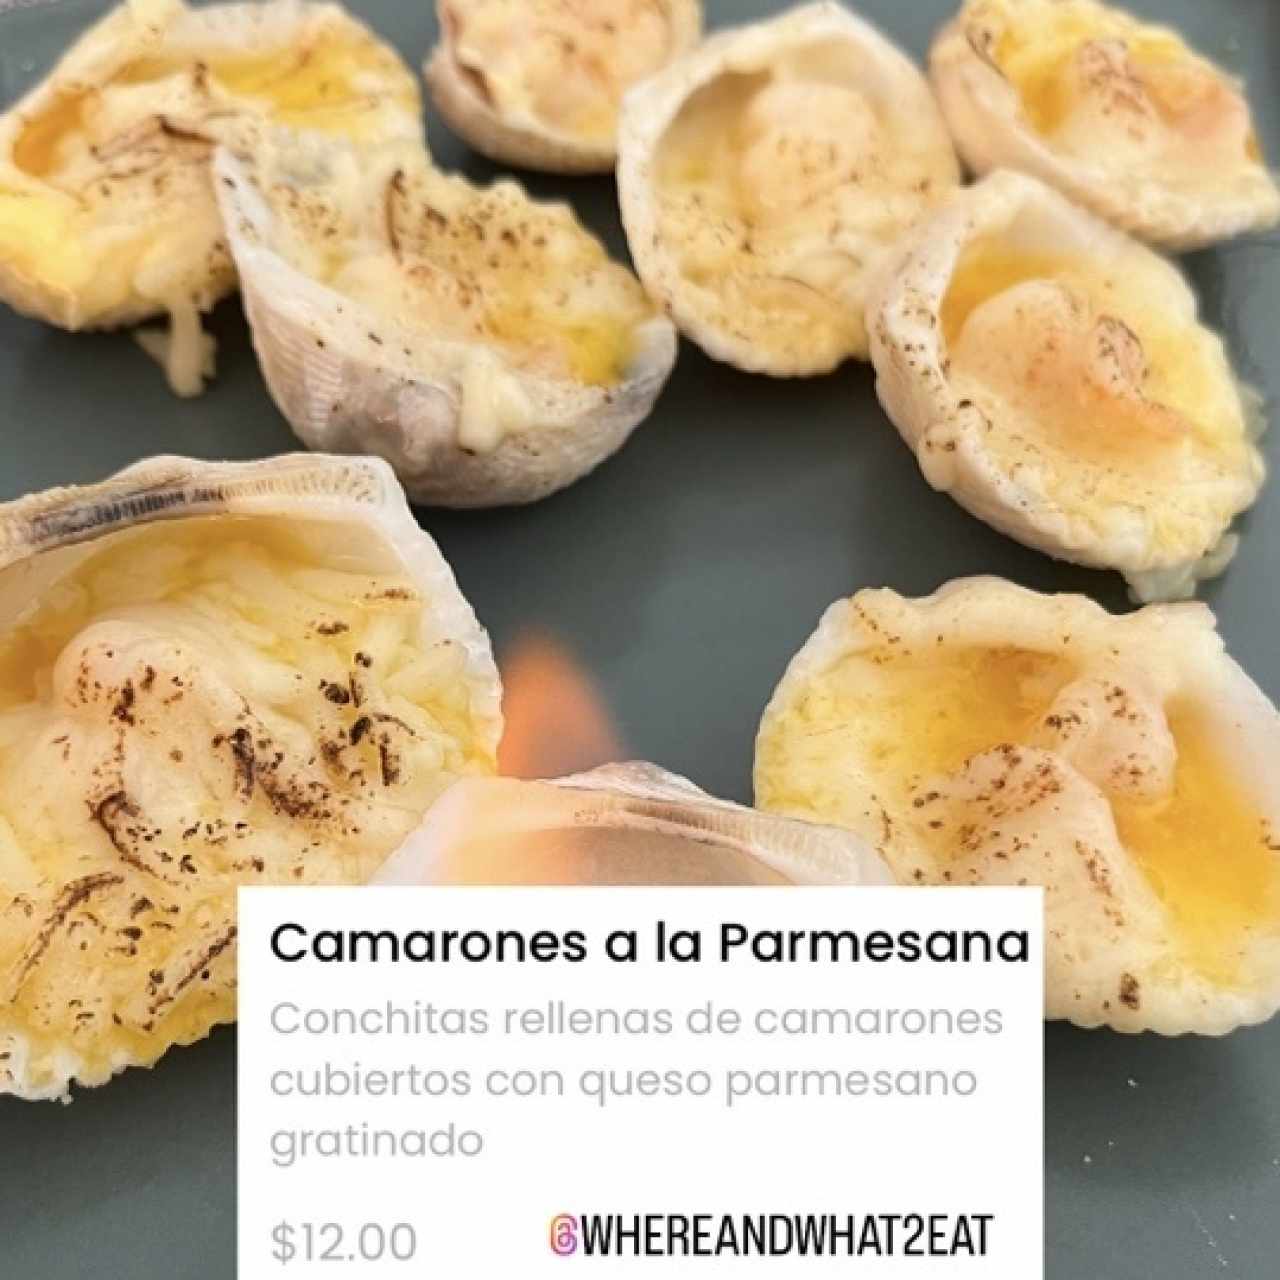 Camarones a la Parmesana